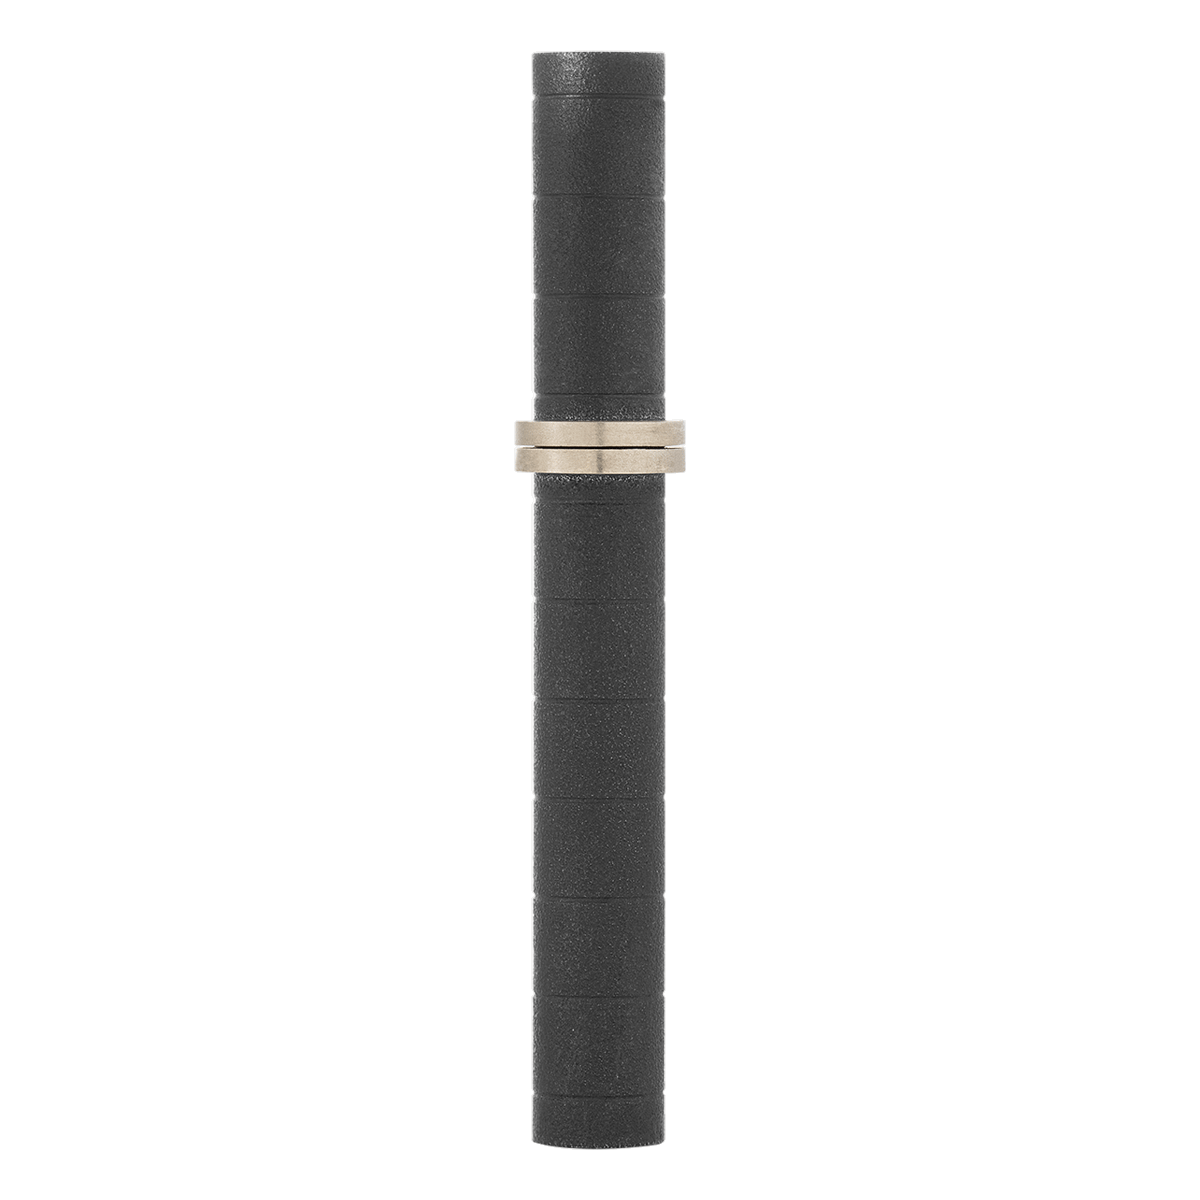 Перьевая ручка Gas Tower 241177 Цвет Чёрный Бронза, палладиевое покрытие, матовый лак | S.T. Dupont